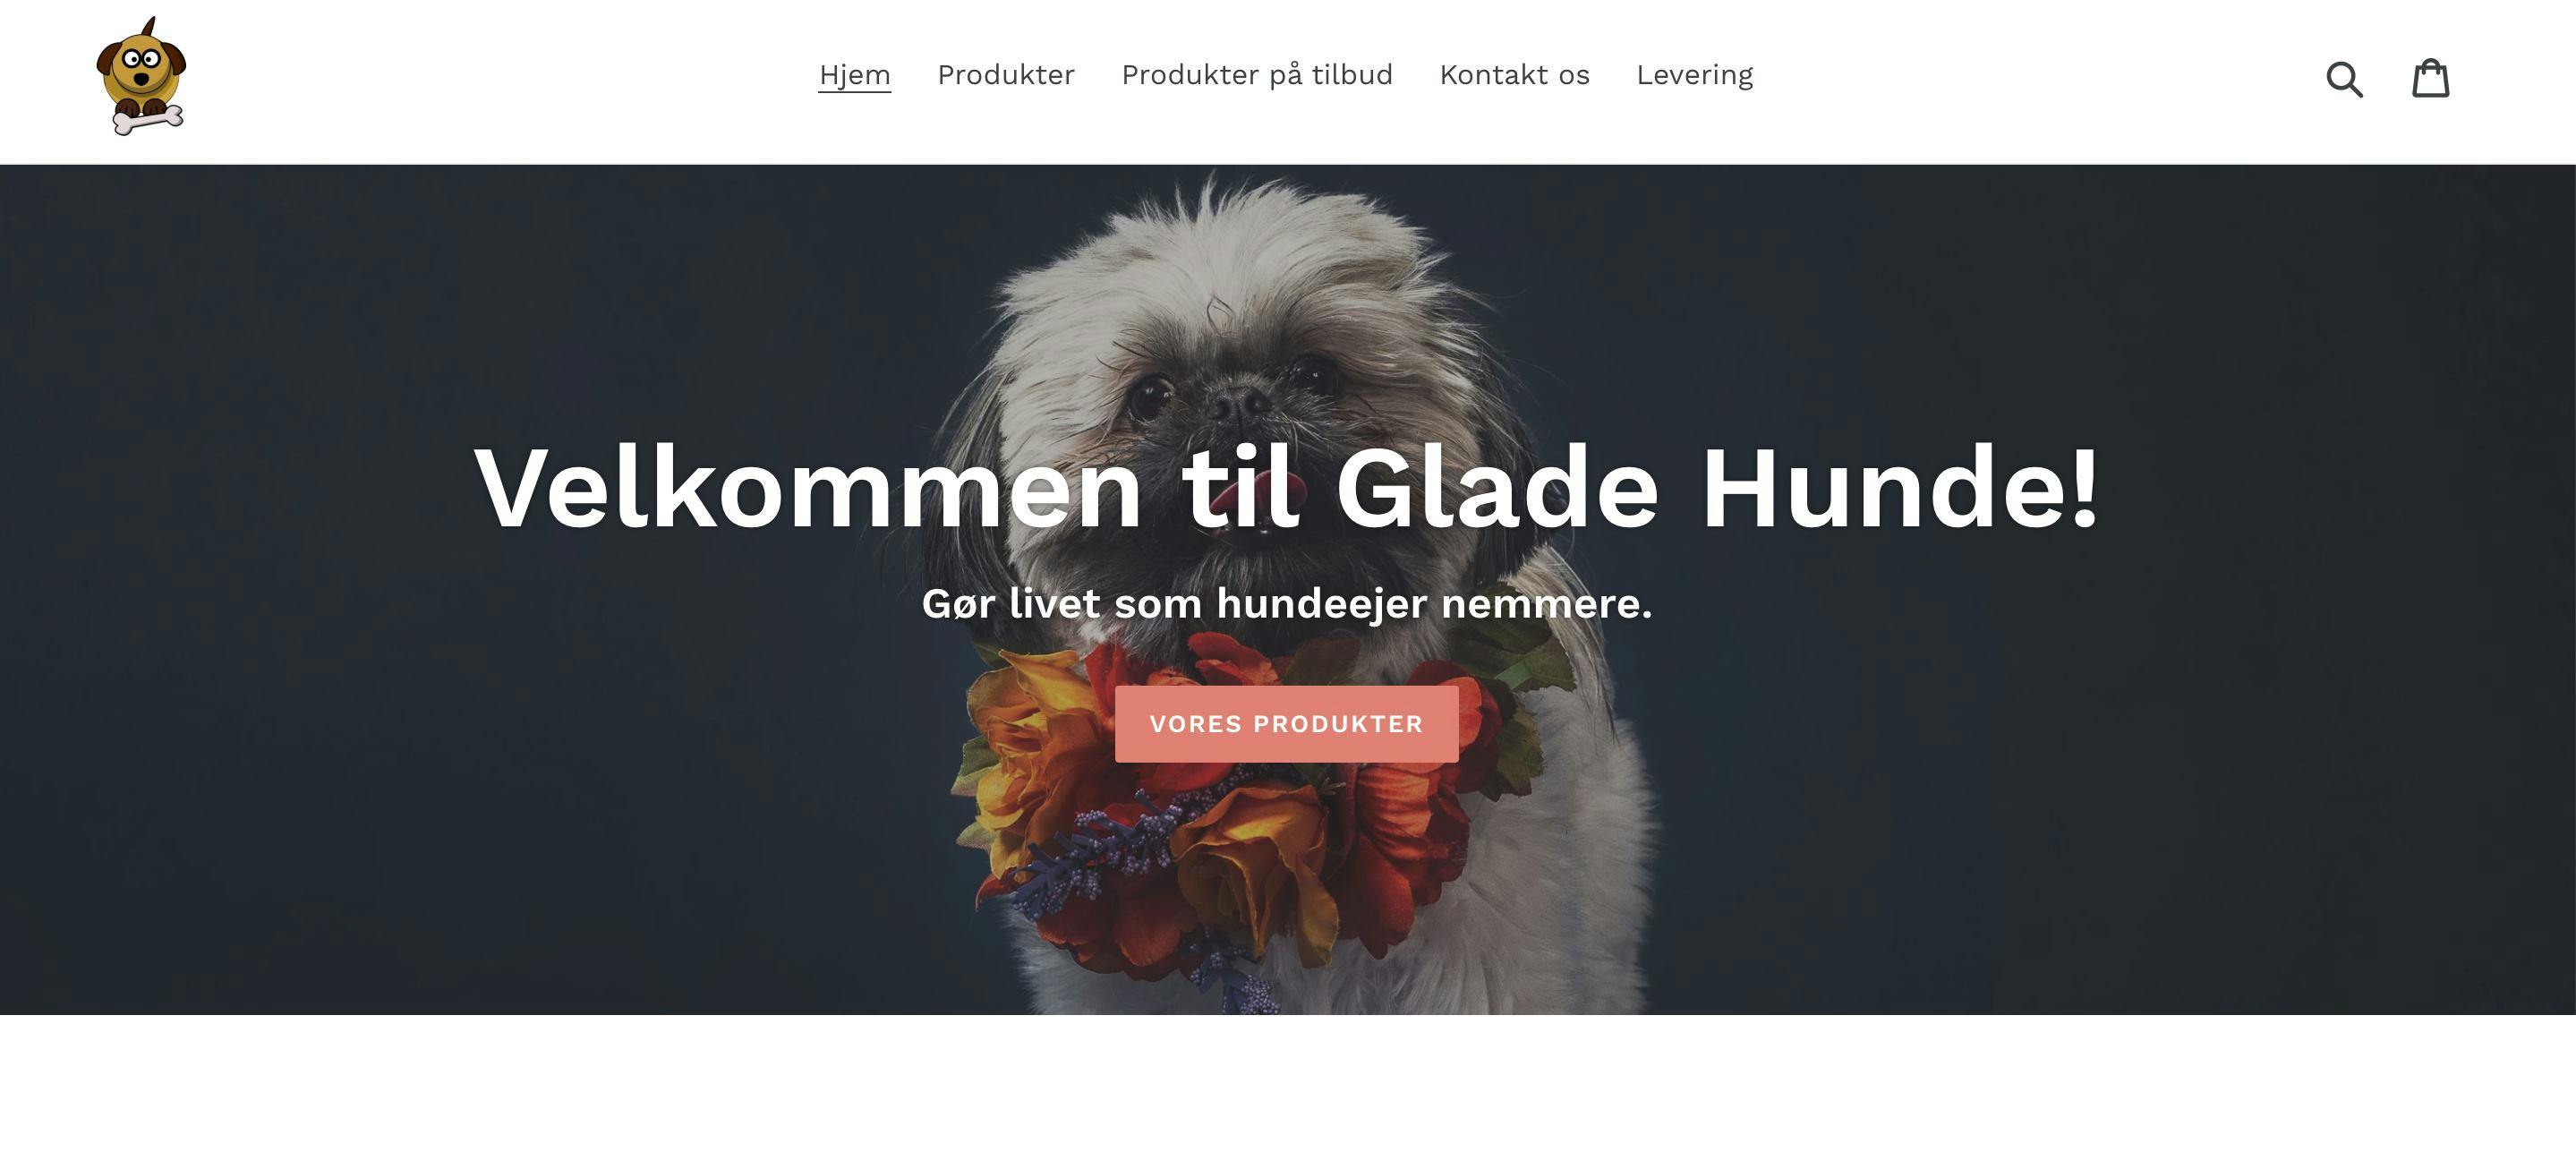 Køb køreklar webshop med salg af hundeudstyr med - Saxis